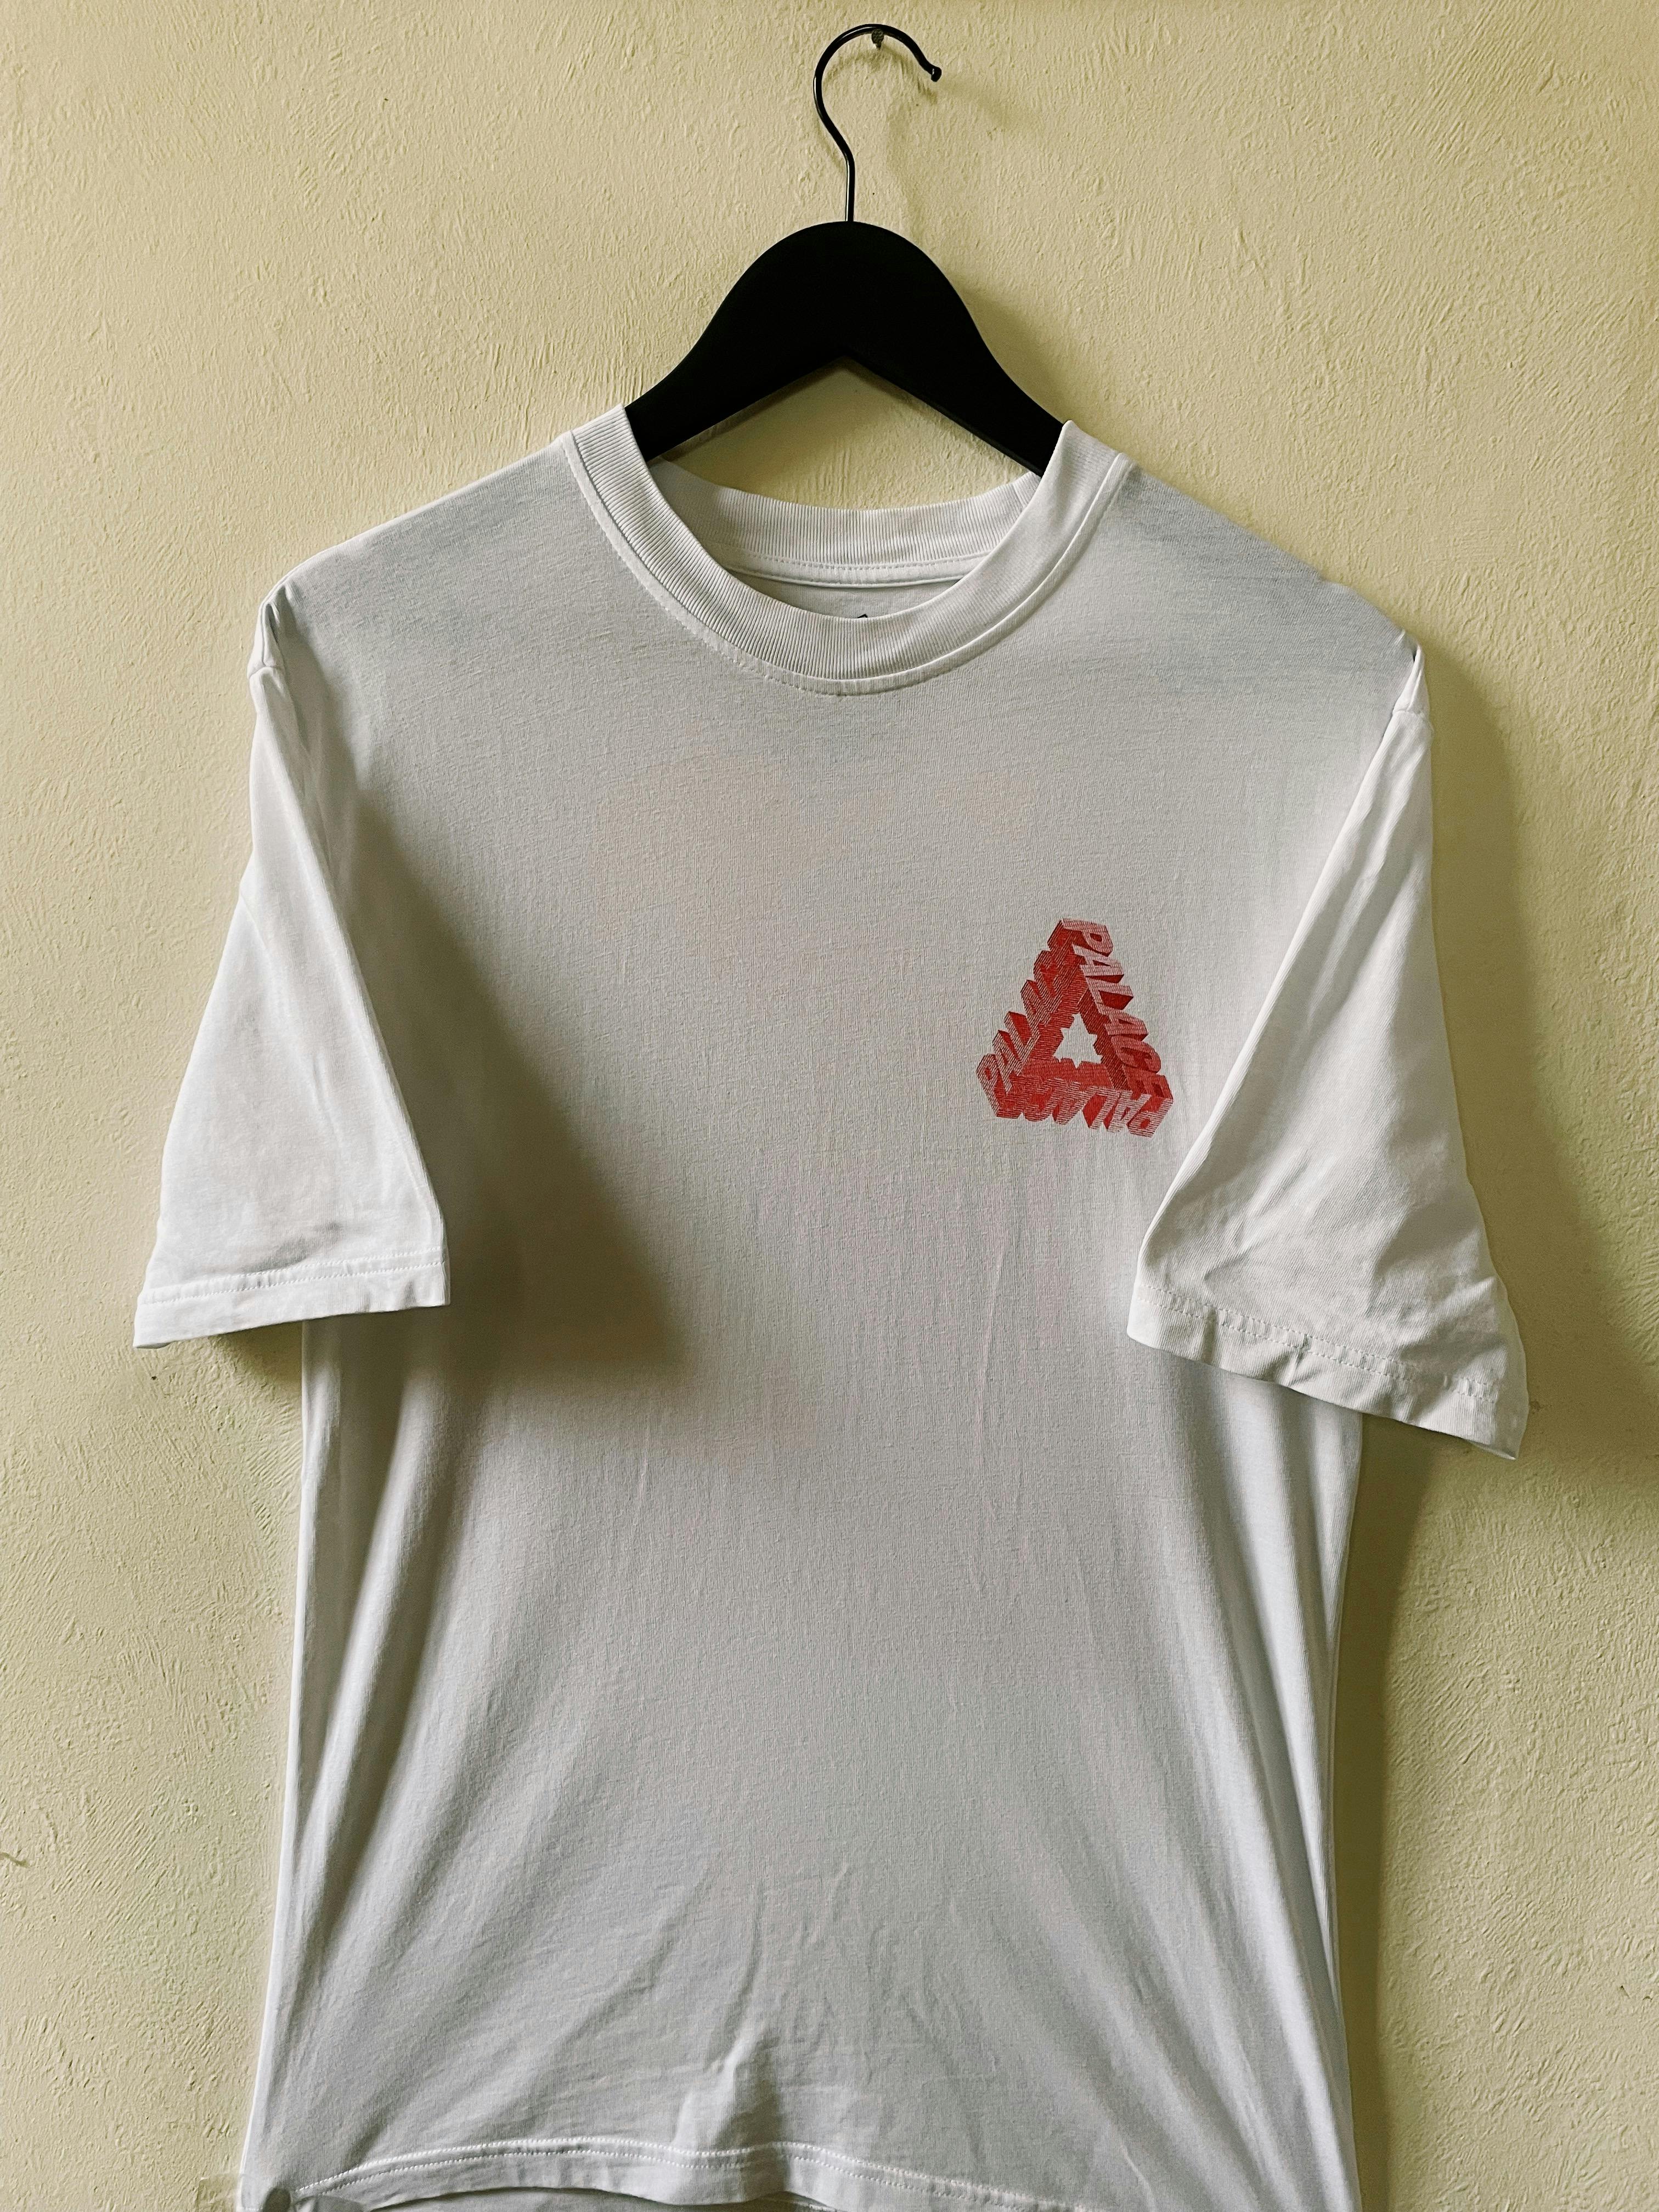 Palace P-3D Tri-Ferg T-shirt White - 2